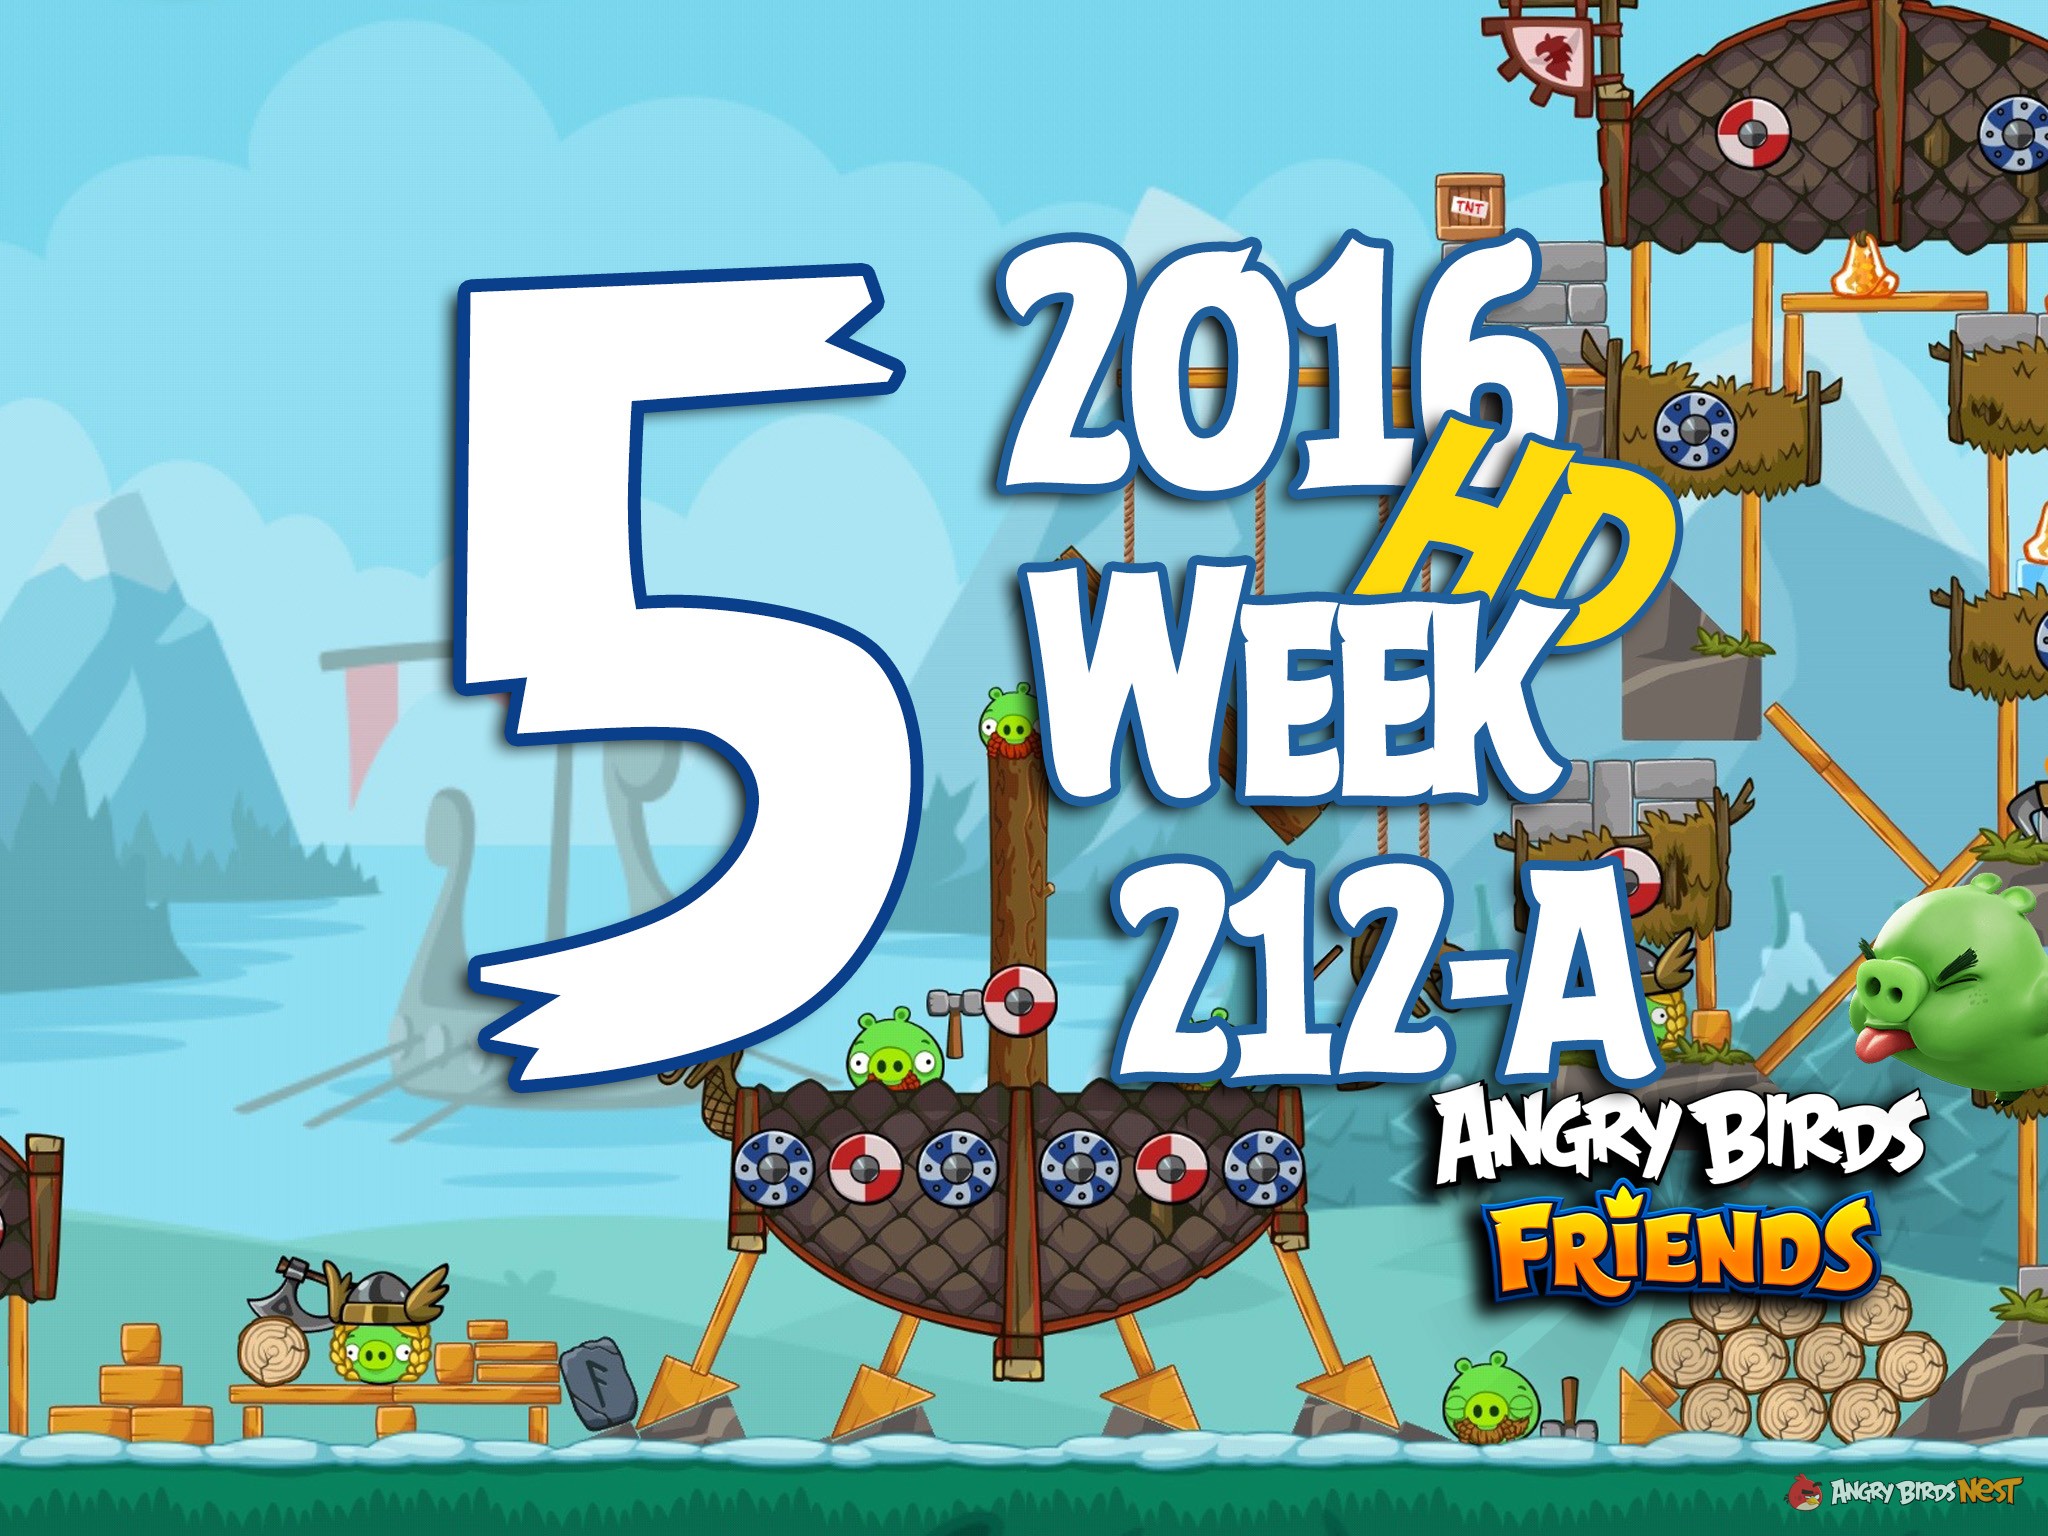 Angry Birds Friends Tournament Level 5 Week 212 Walkthrough | 2016